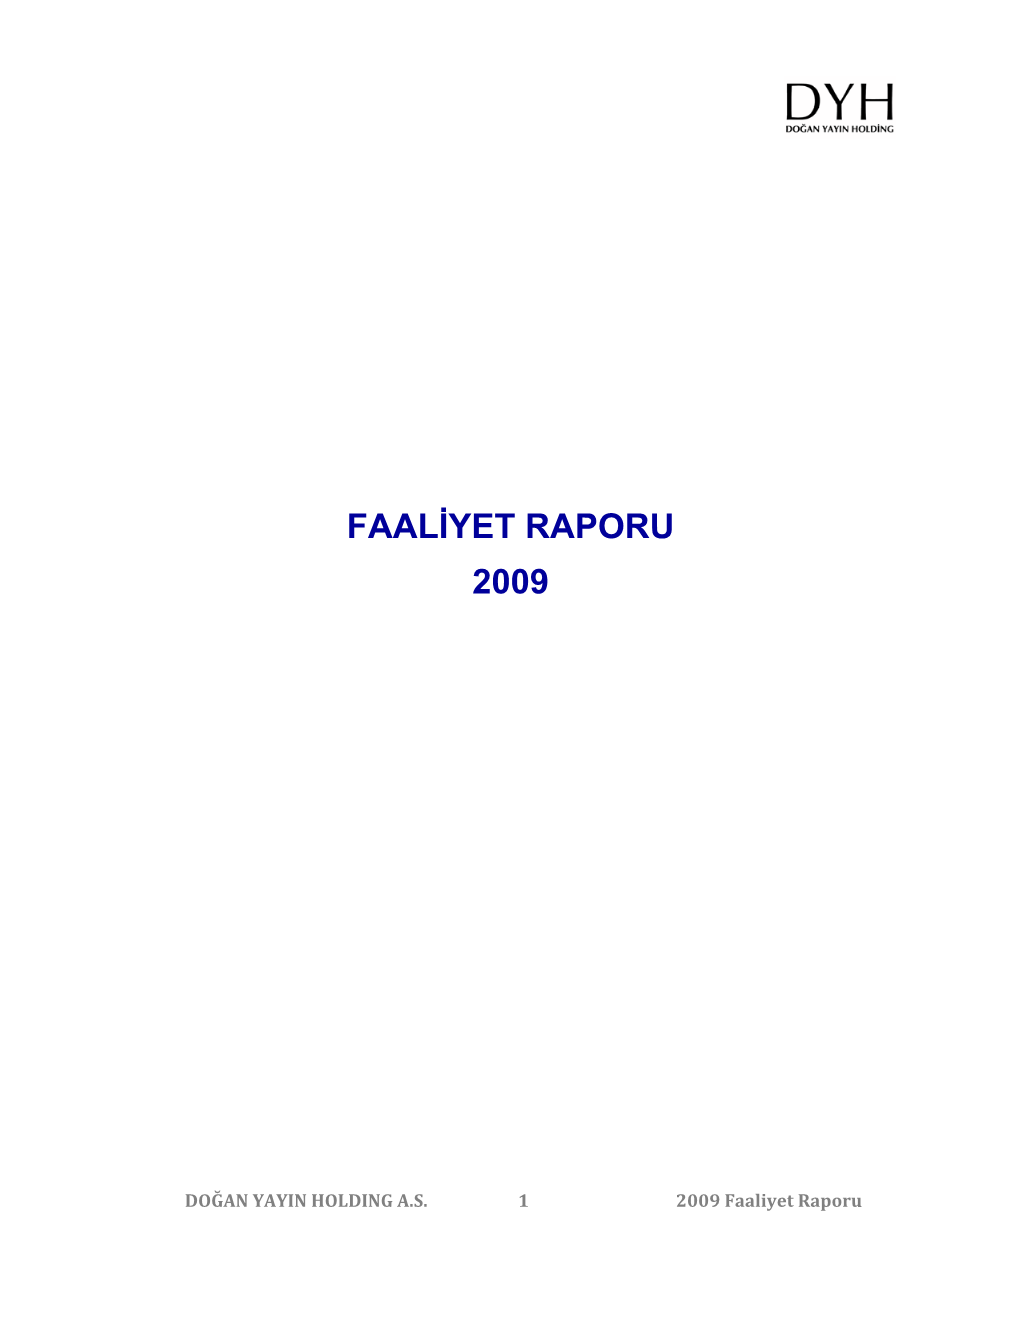 Faaliyet Raporu 2009